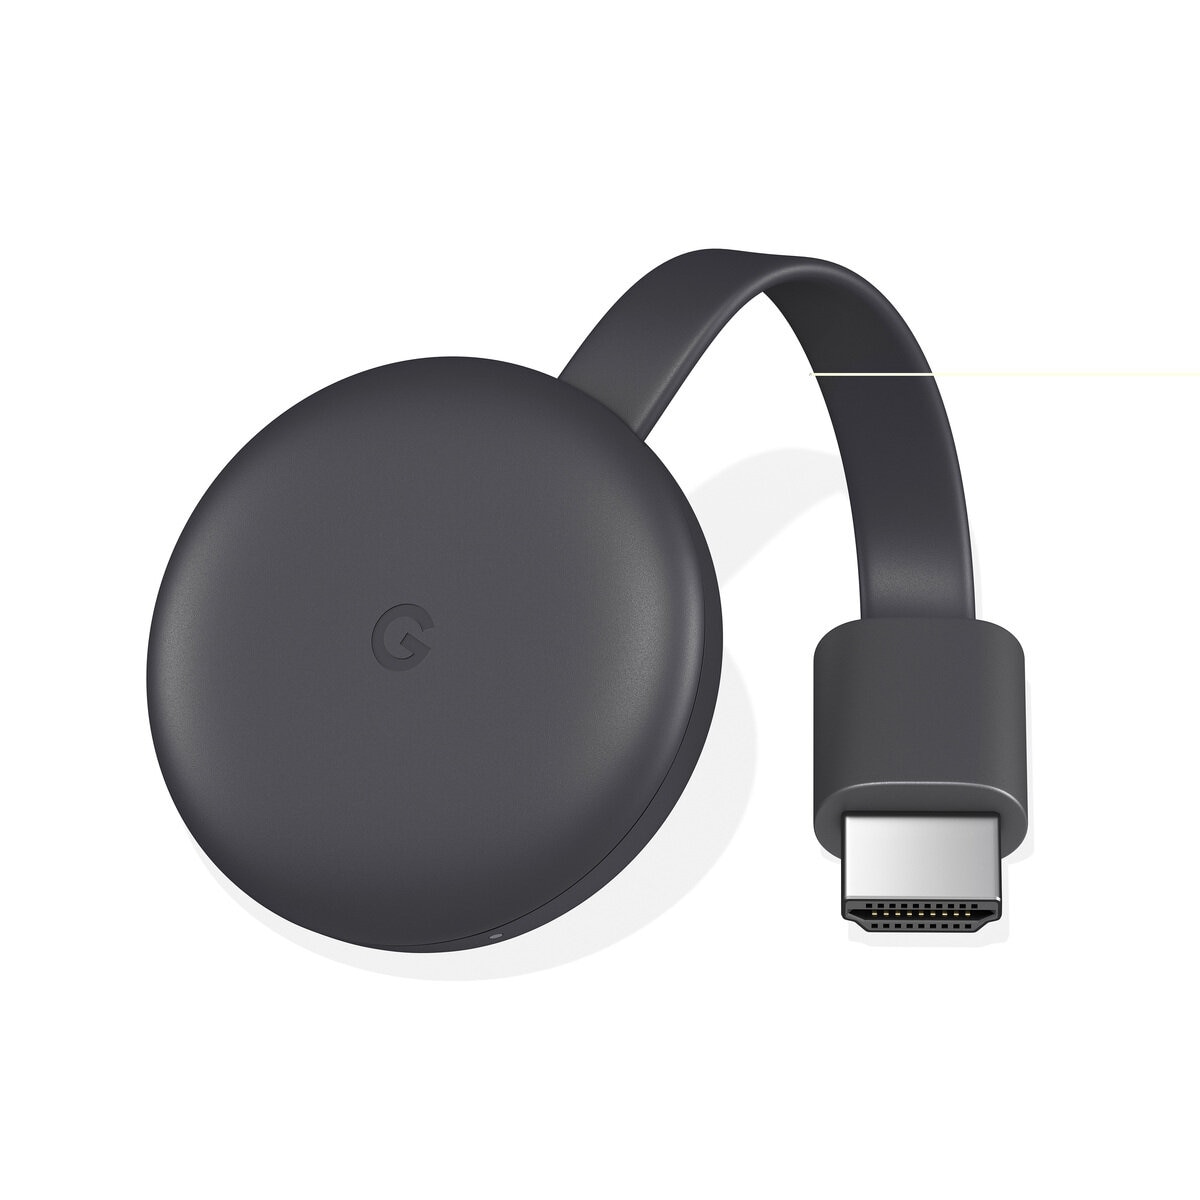 グーグル Chromecast ビデオストリーミングデバイス GA00439-JP